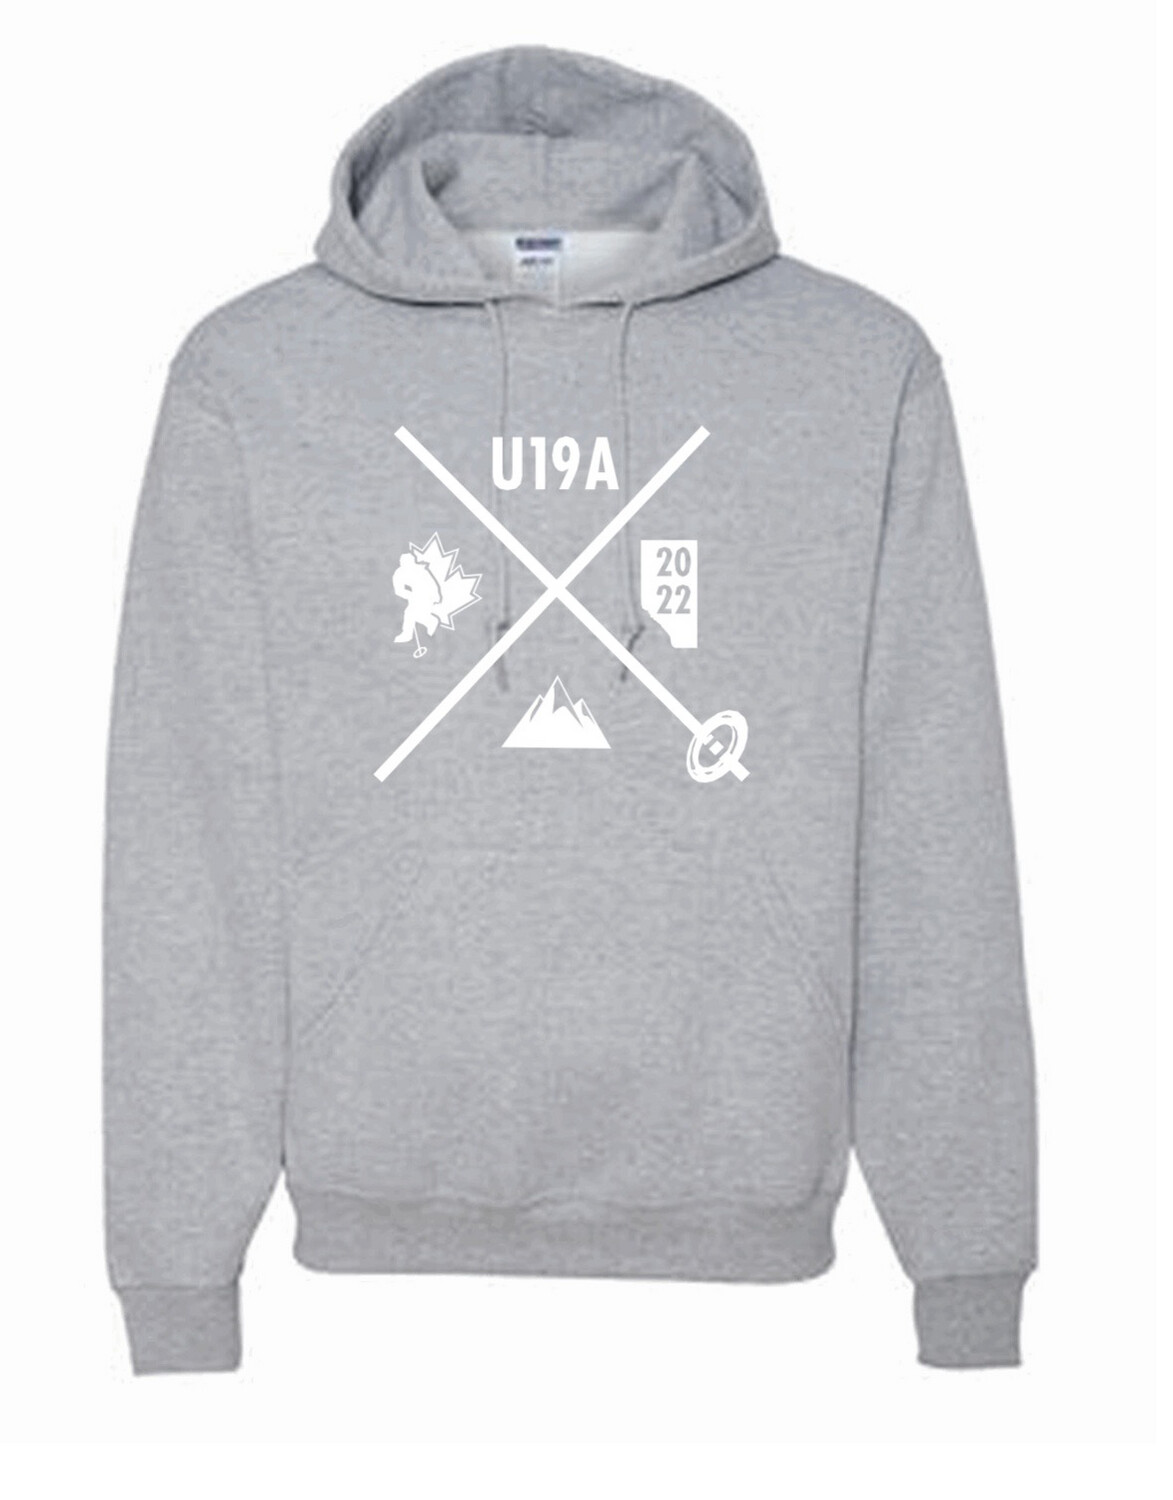 Ringette U19A hoodie